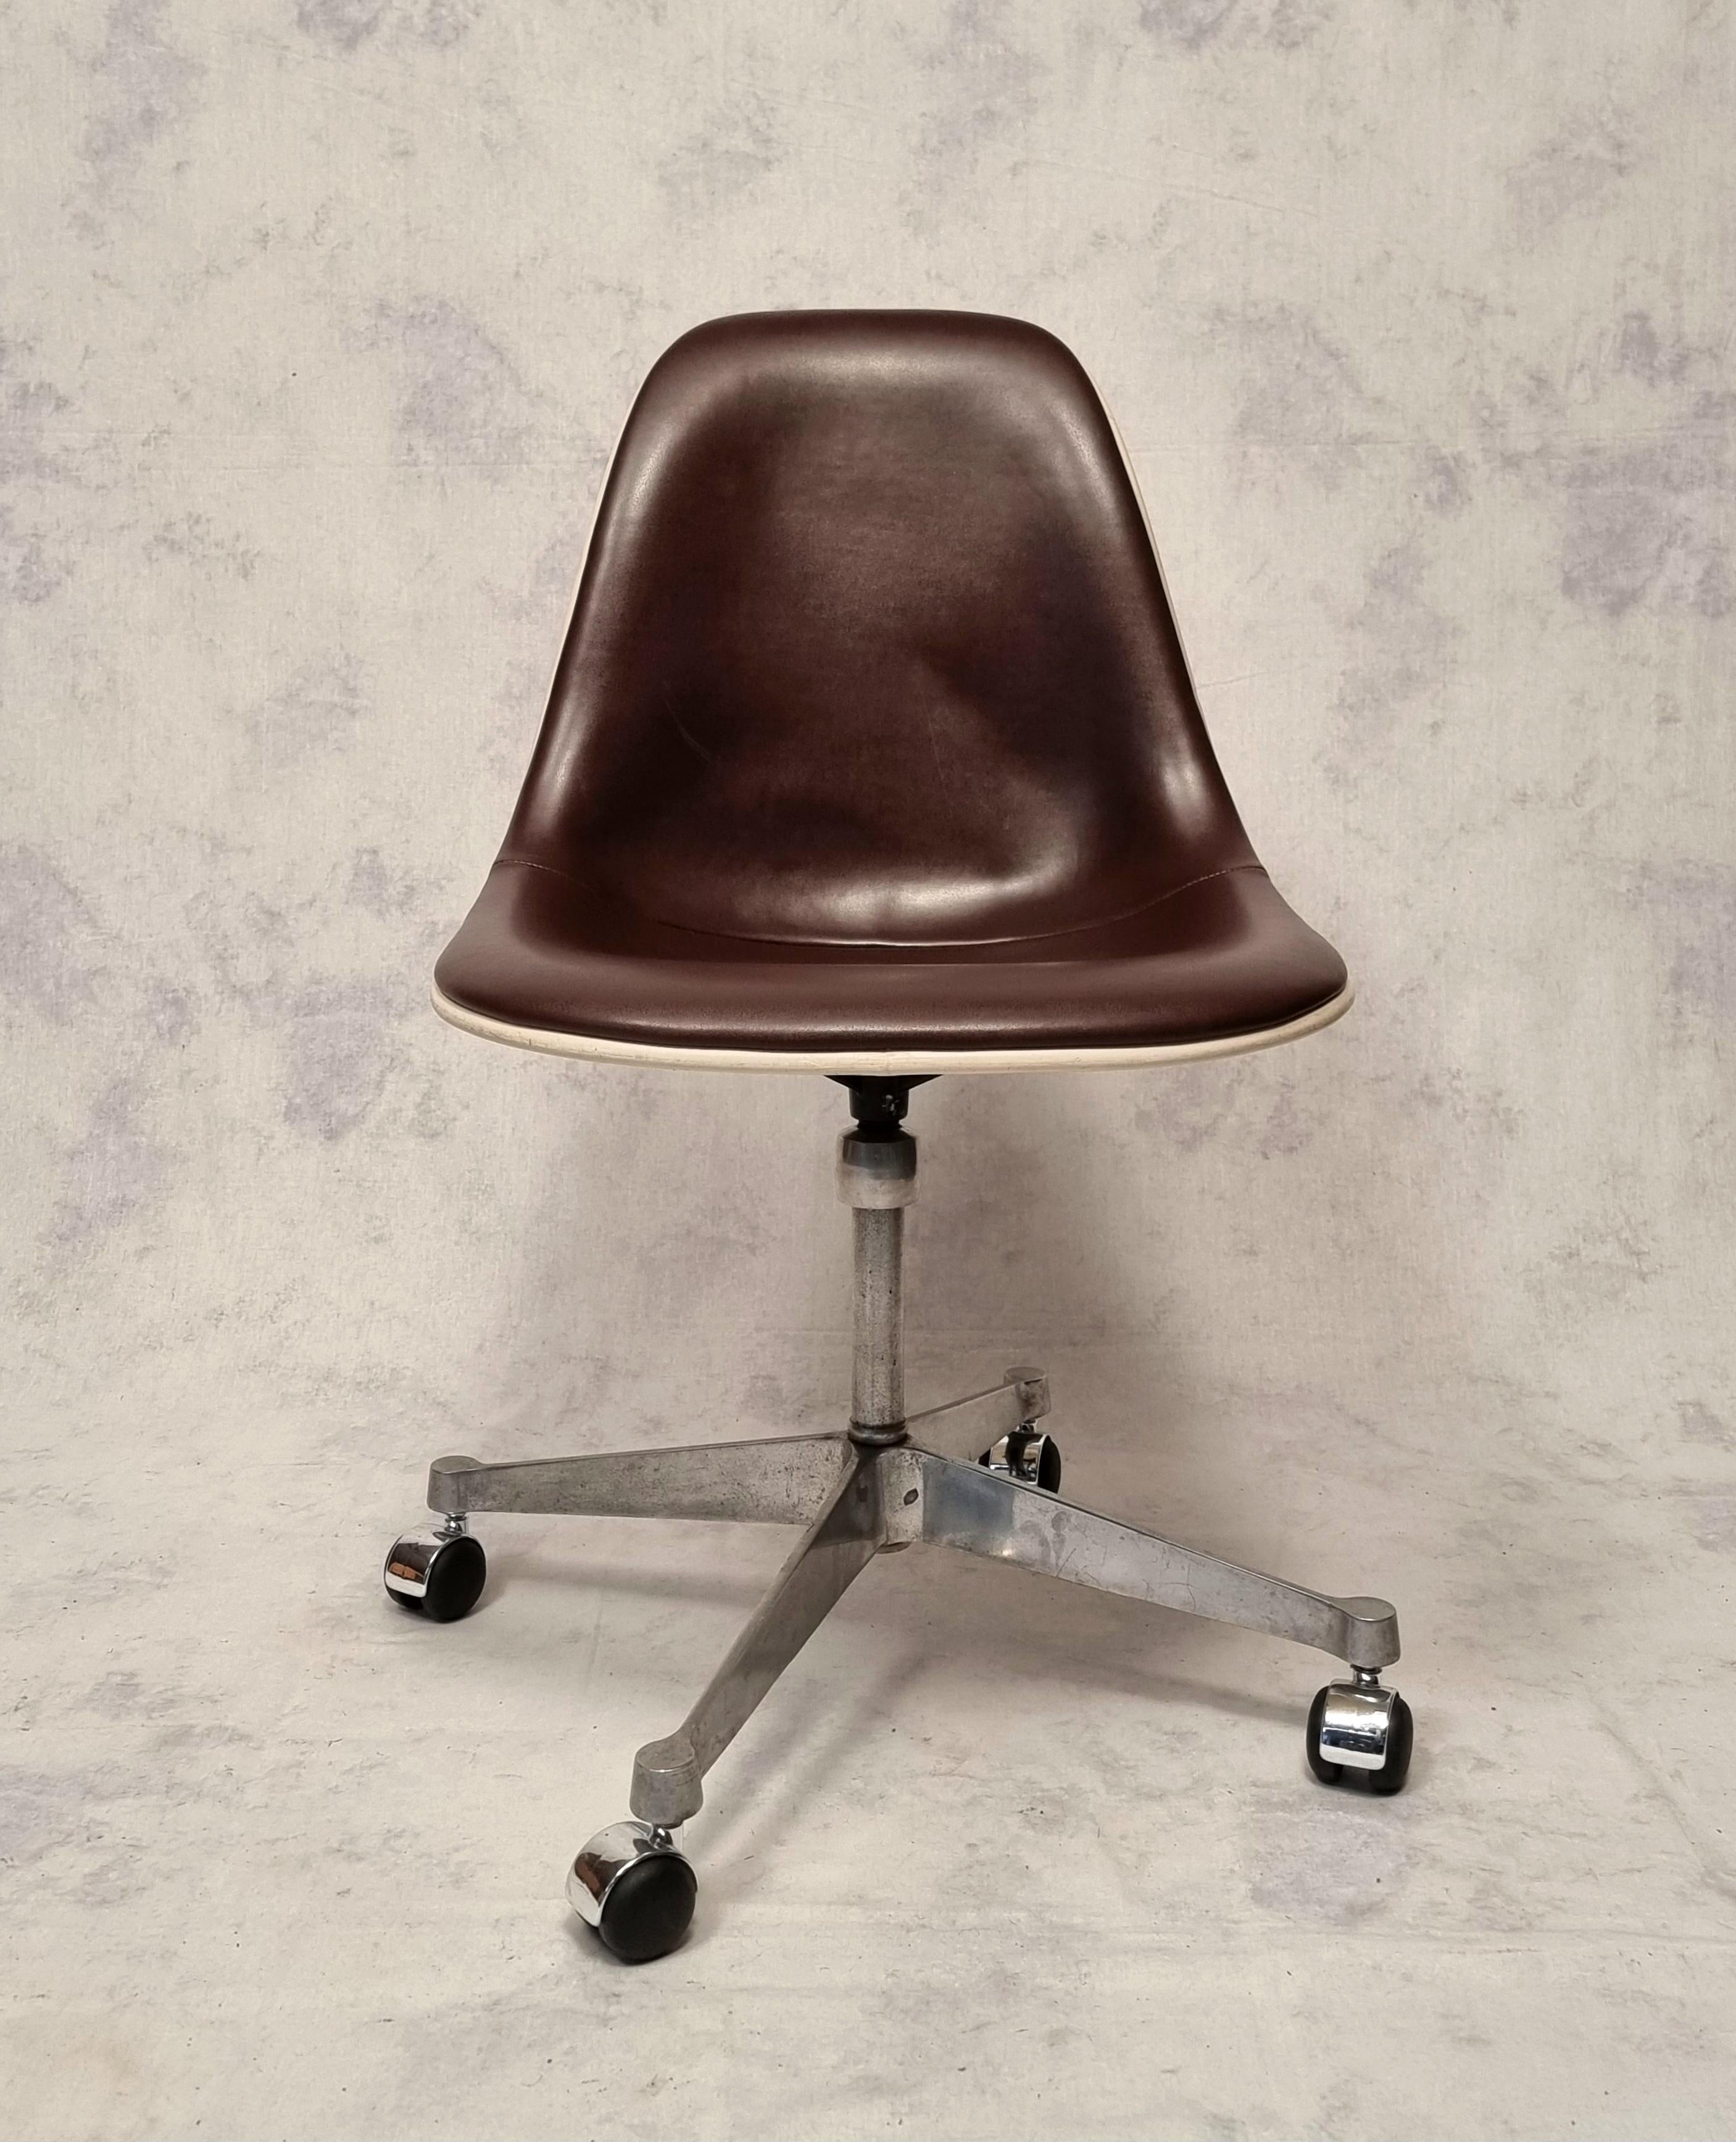 Bürostuhl der amerikanischen Designer Charles und Ray Eames, hergestellt von Herman Miller in den 1960er Jahren. Charles und Ray Eames gehören zu den emblematischsten Designern der Geschichte, die normalerweise ihren Lounge Chair kreieren.